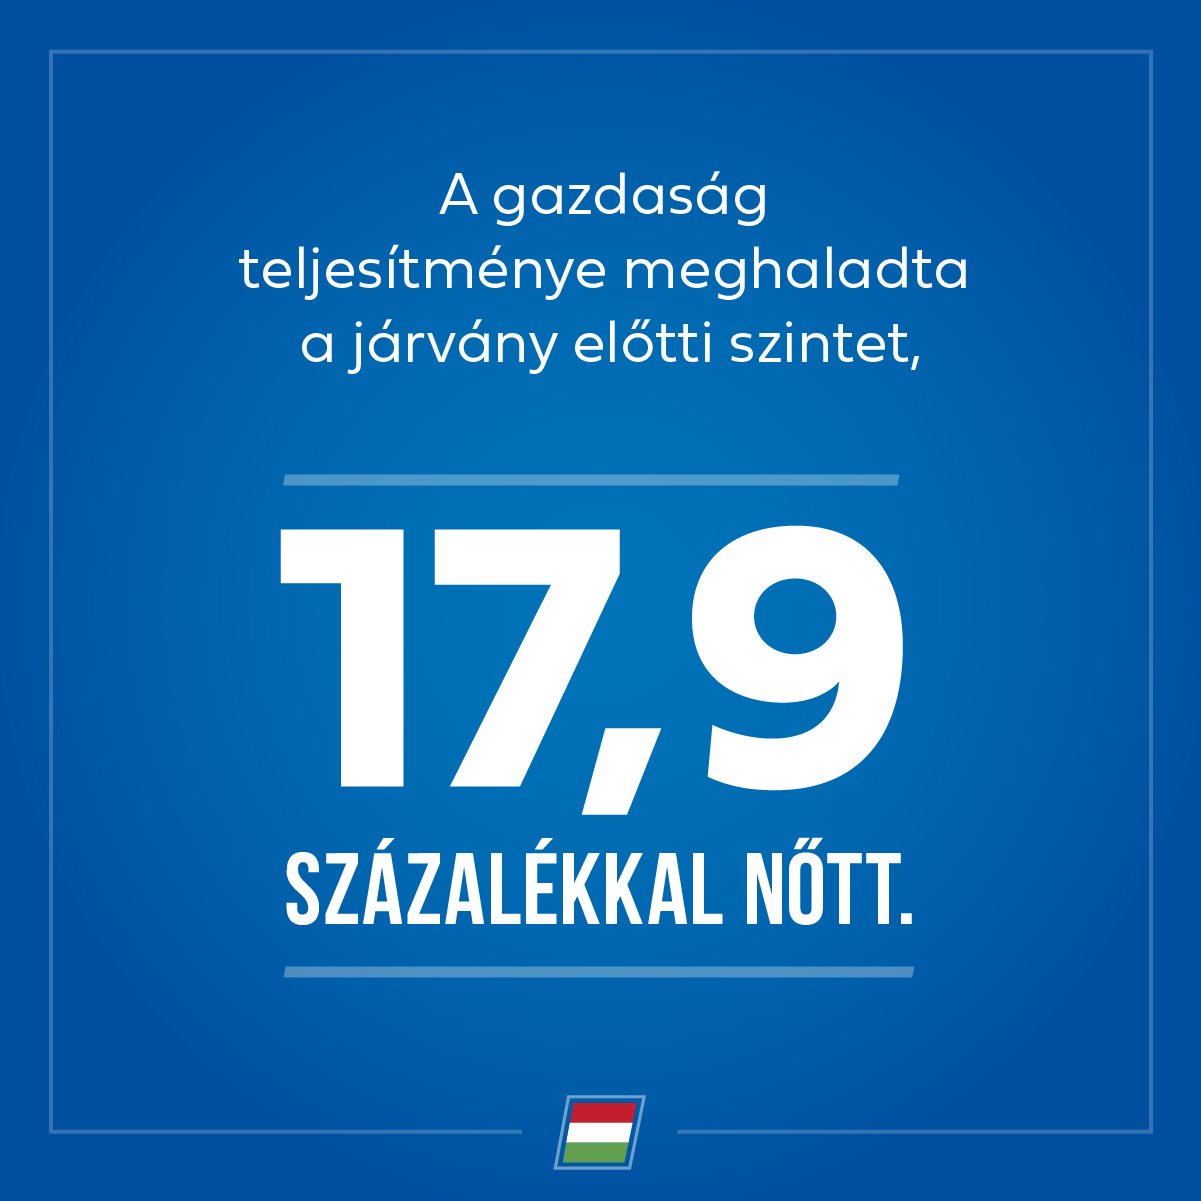 A gazdaság újraindítása Magyarországon az egyik leggyorsabb az Európai Unióban.